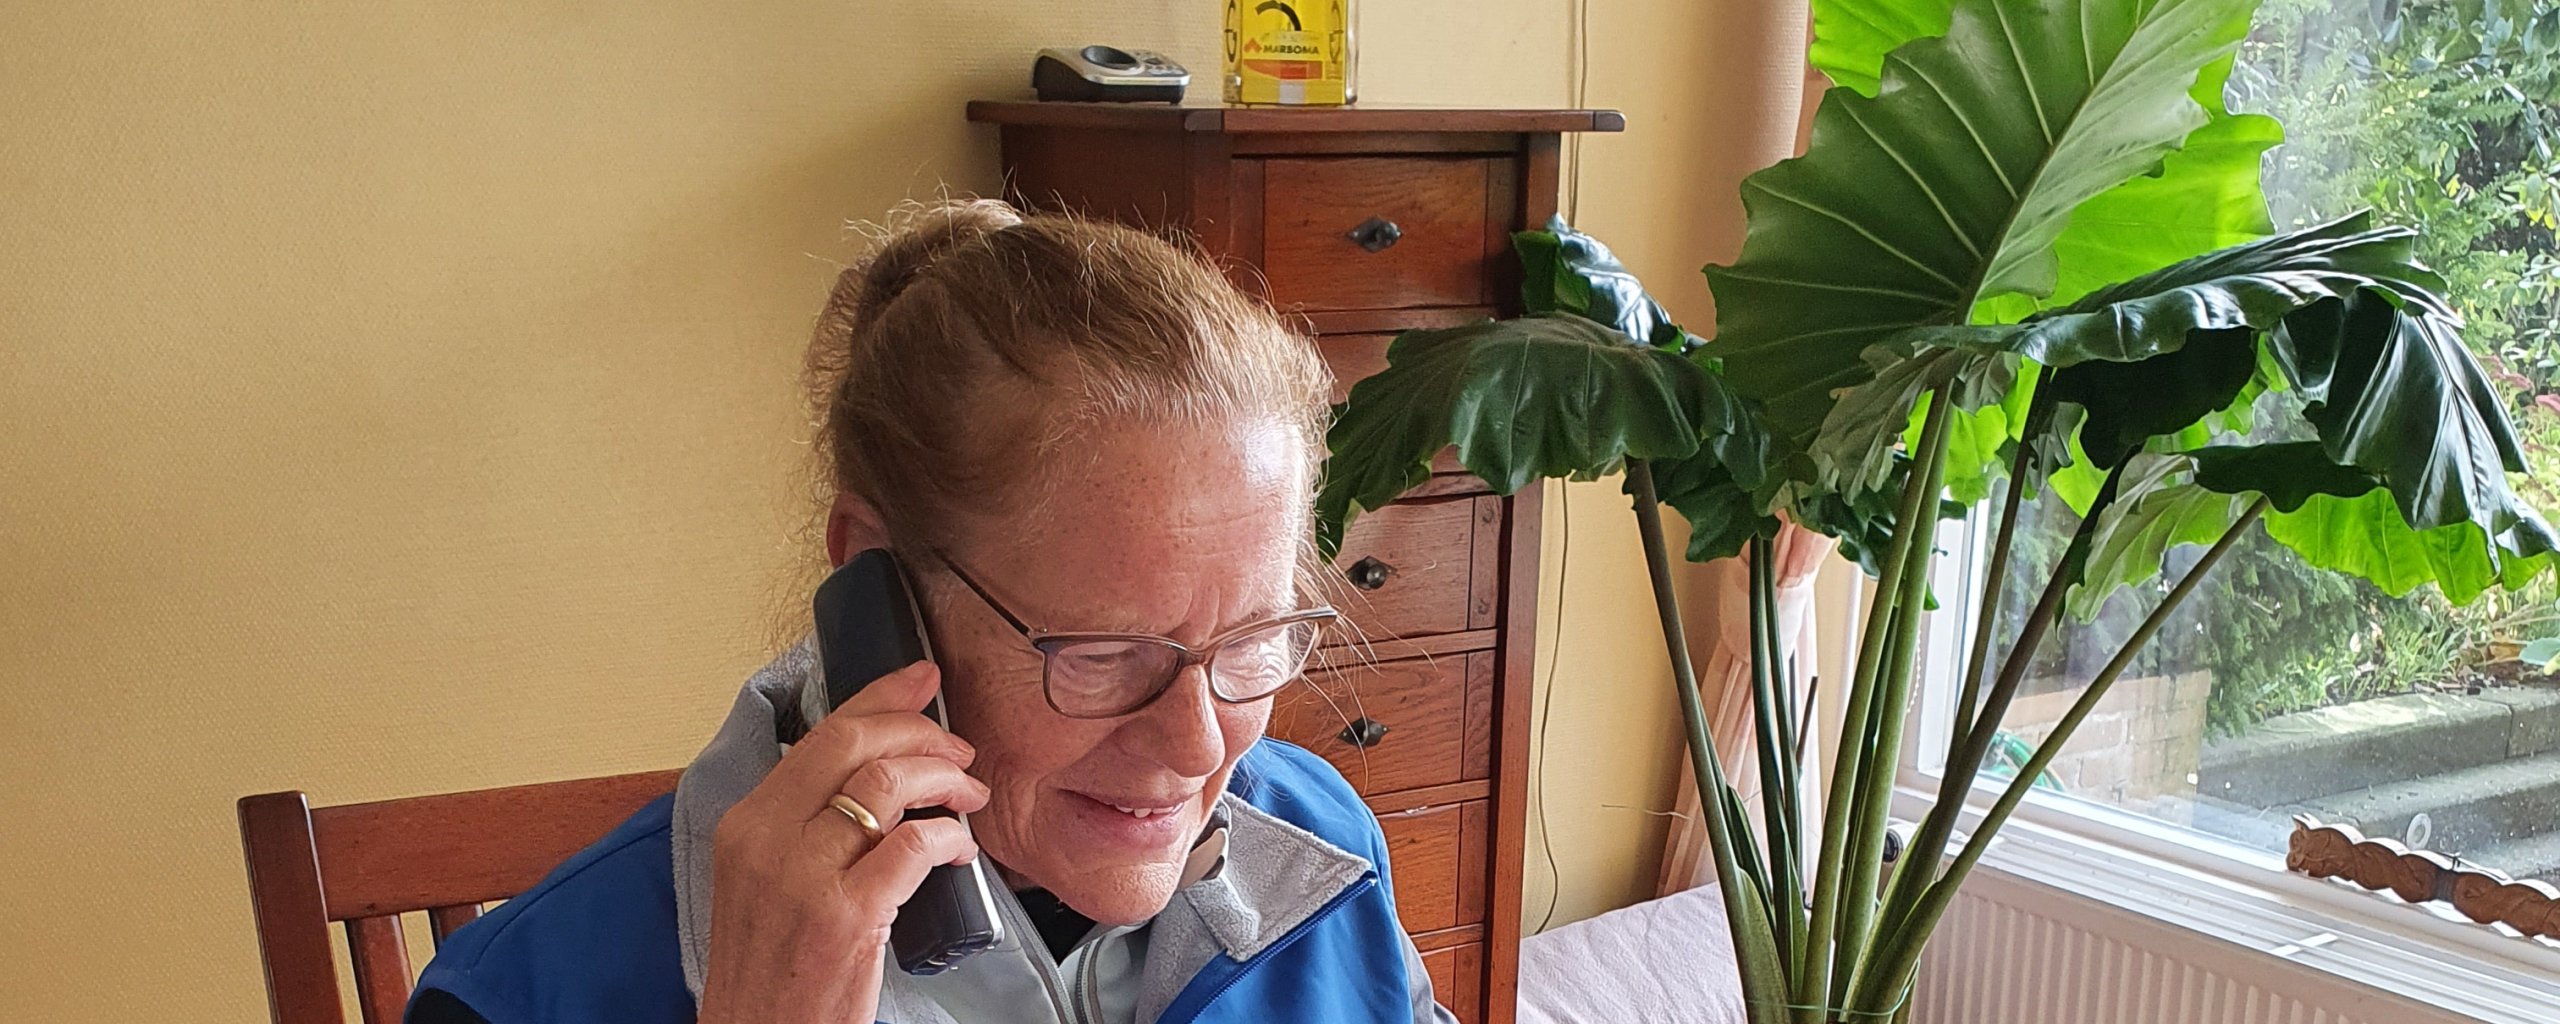 Een oudere mevrouw houdt telefonisch spreekuur voor vragen over het openbaar vervoer